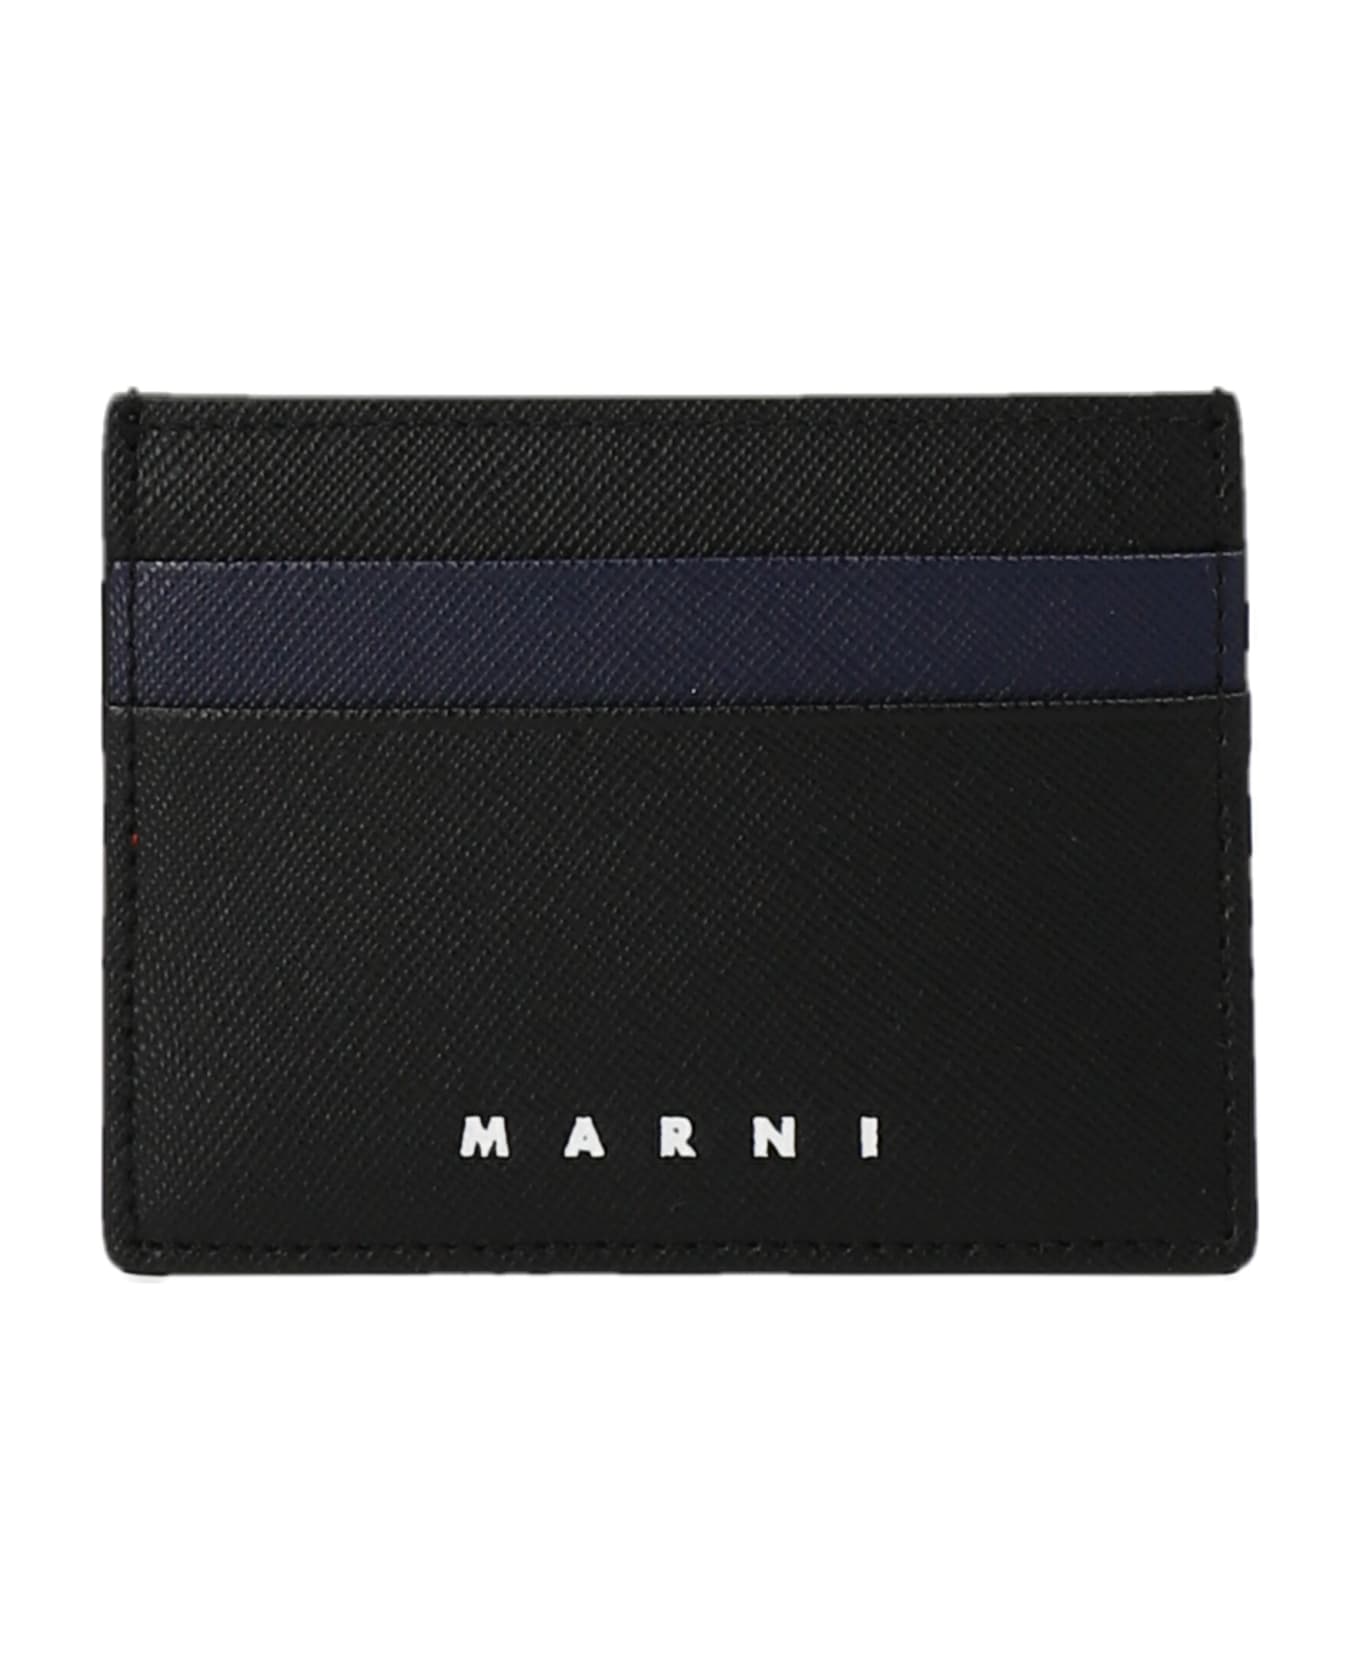 Marni Logo Card Holder - Black  